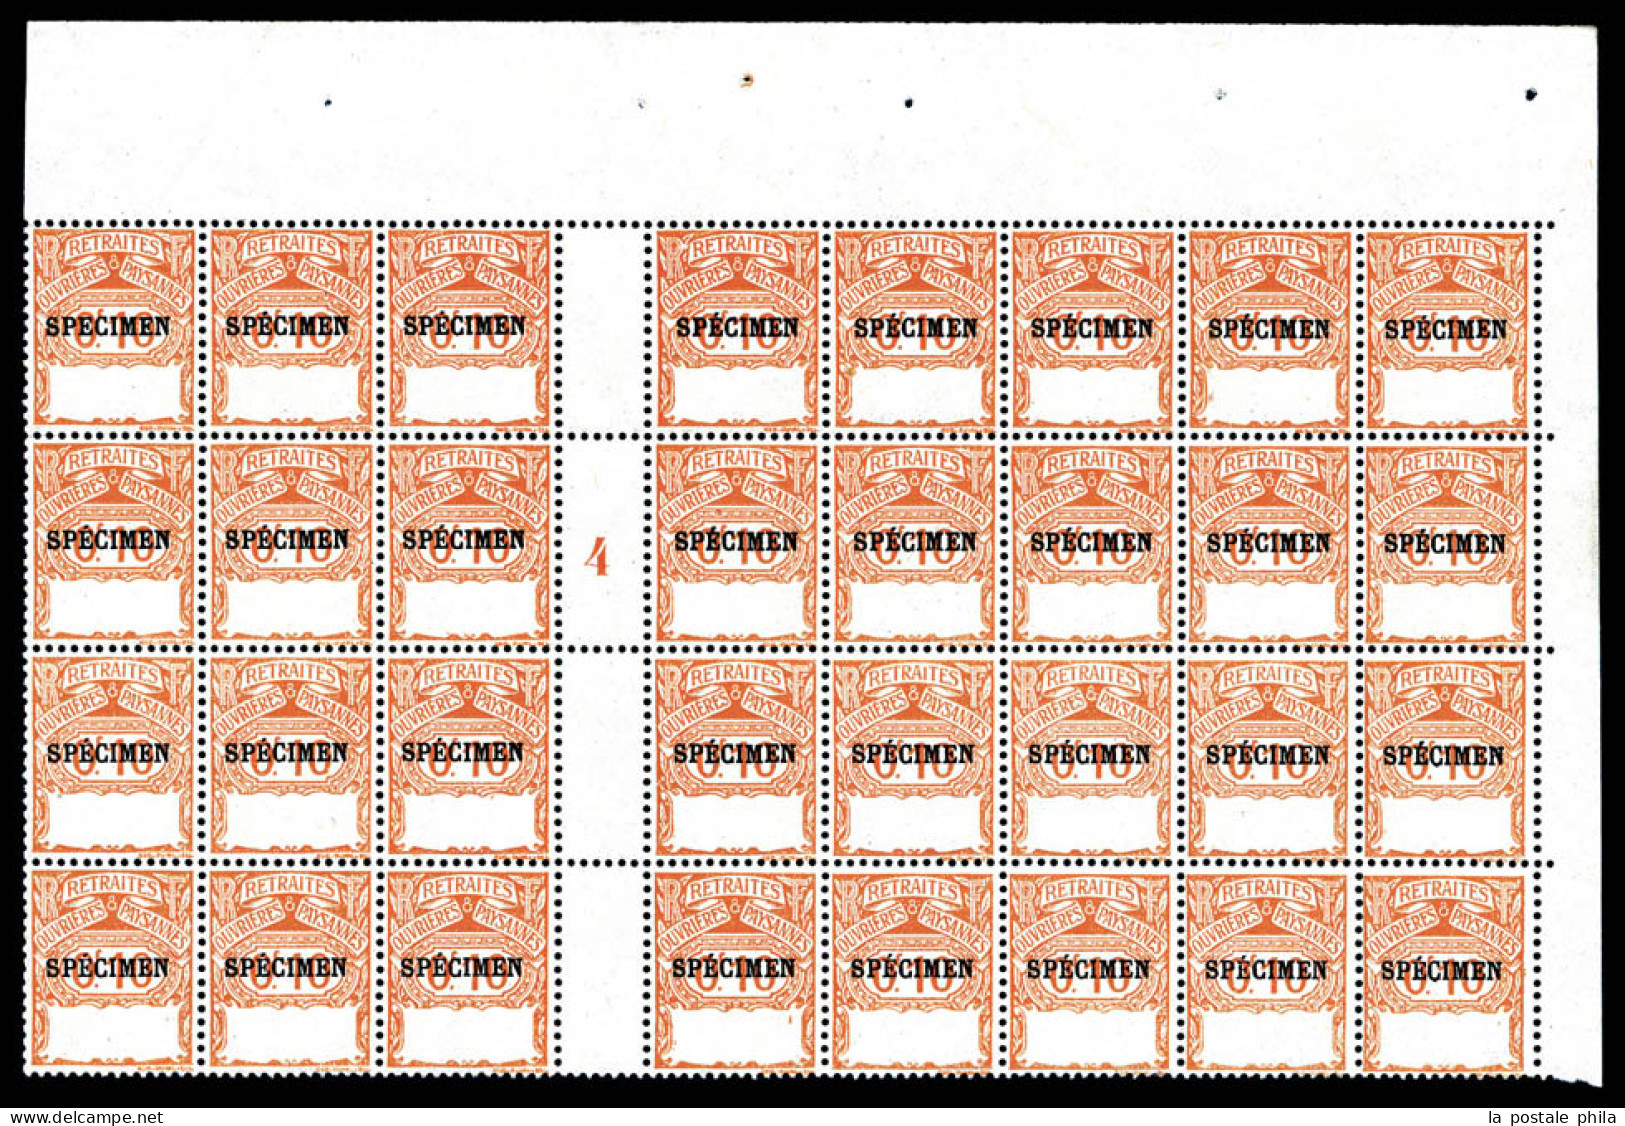 ** TIMBRES SOCIO-POSTAUX, Emission De 1911: Retraite Ouvrière Paysane: 0.10f Orange Type Cadre Vide, Panneau De 32 Exemp - Lehrkurse